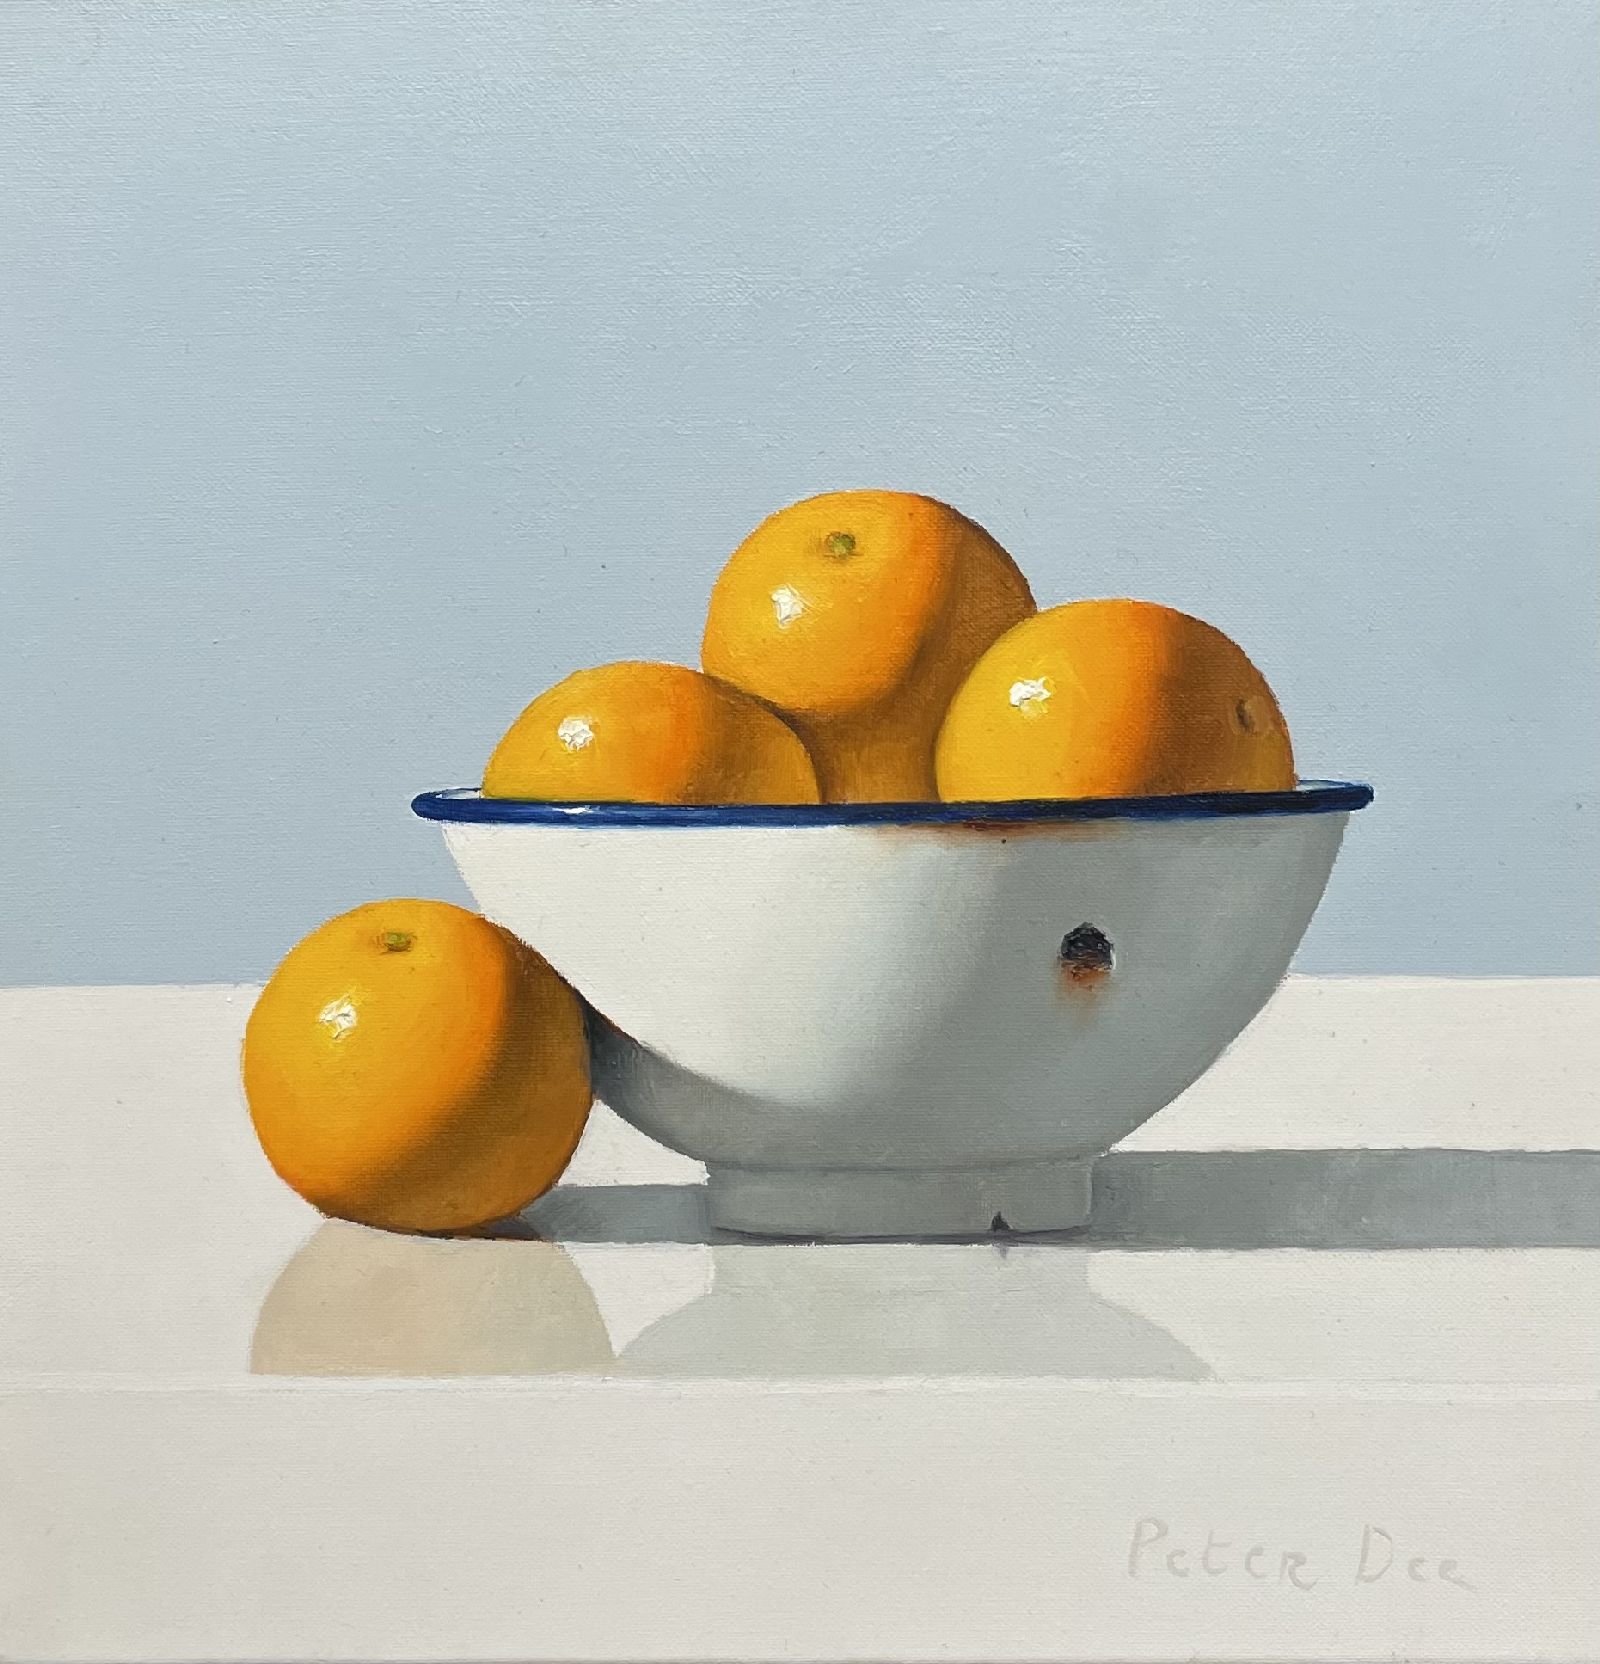 Oranges in Vintage White Enamelware Bowl  by Peter Dee